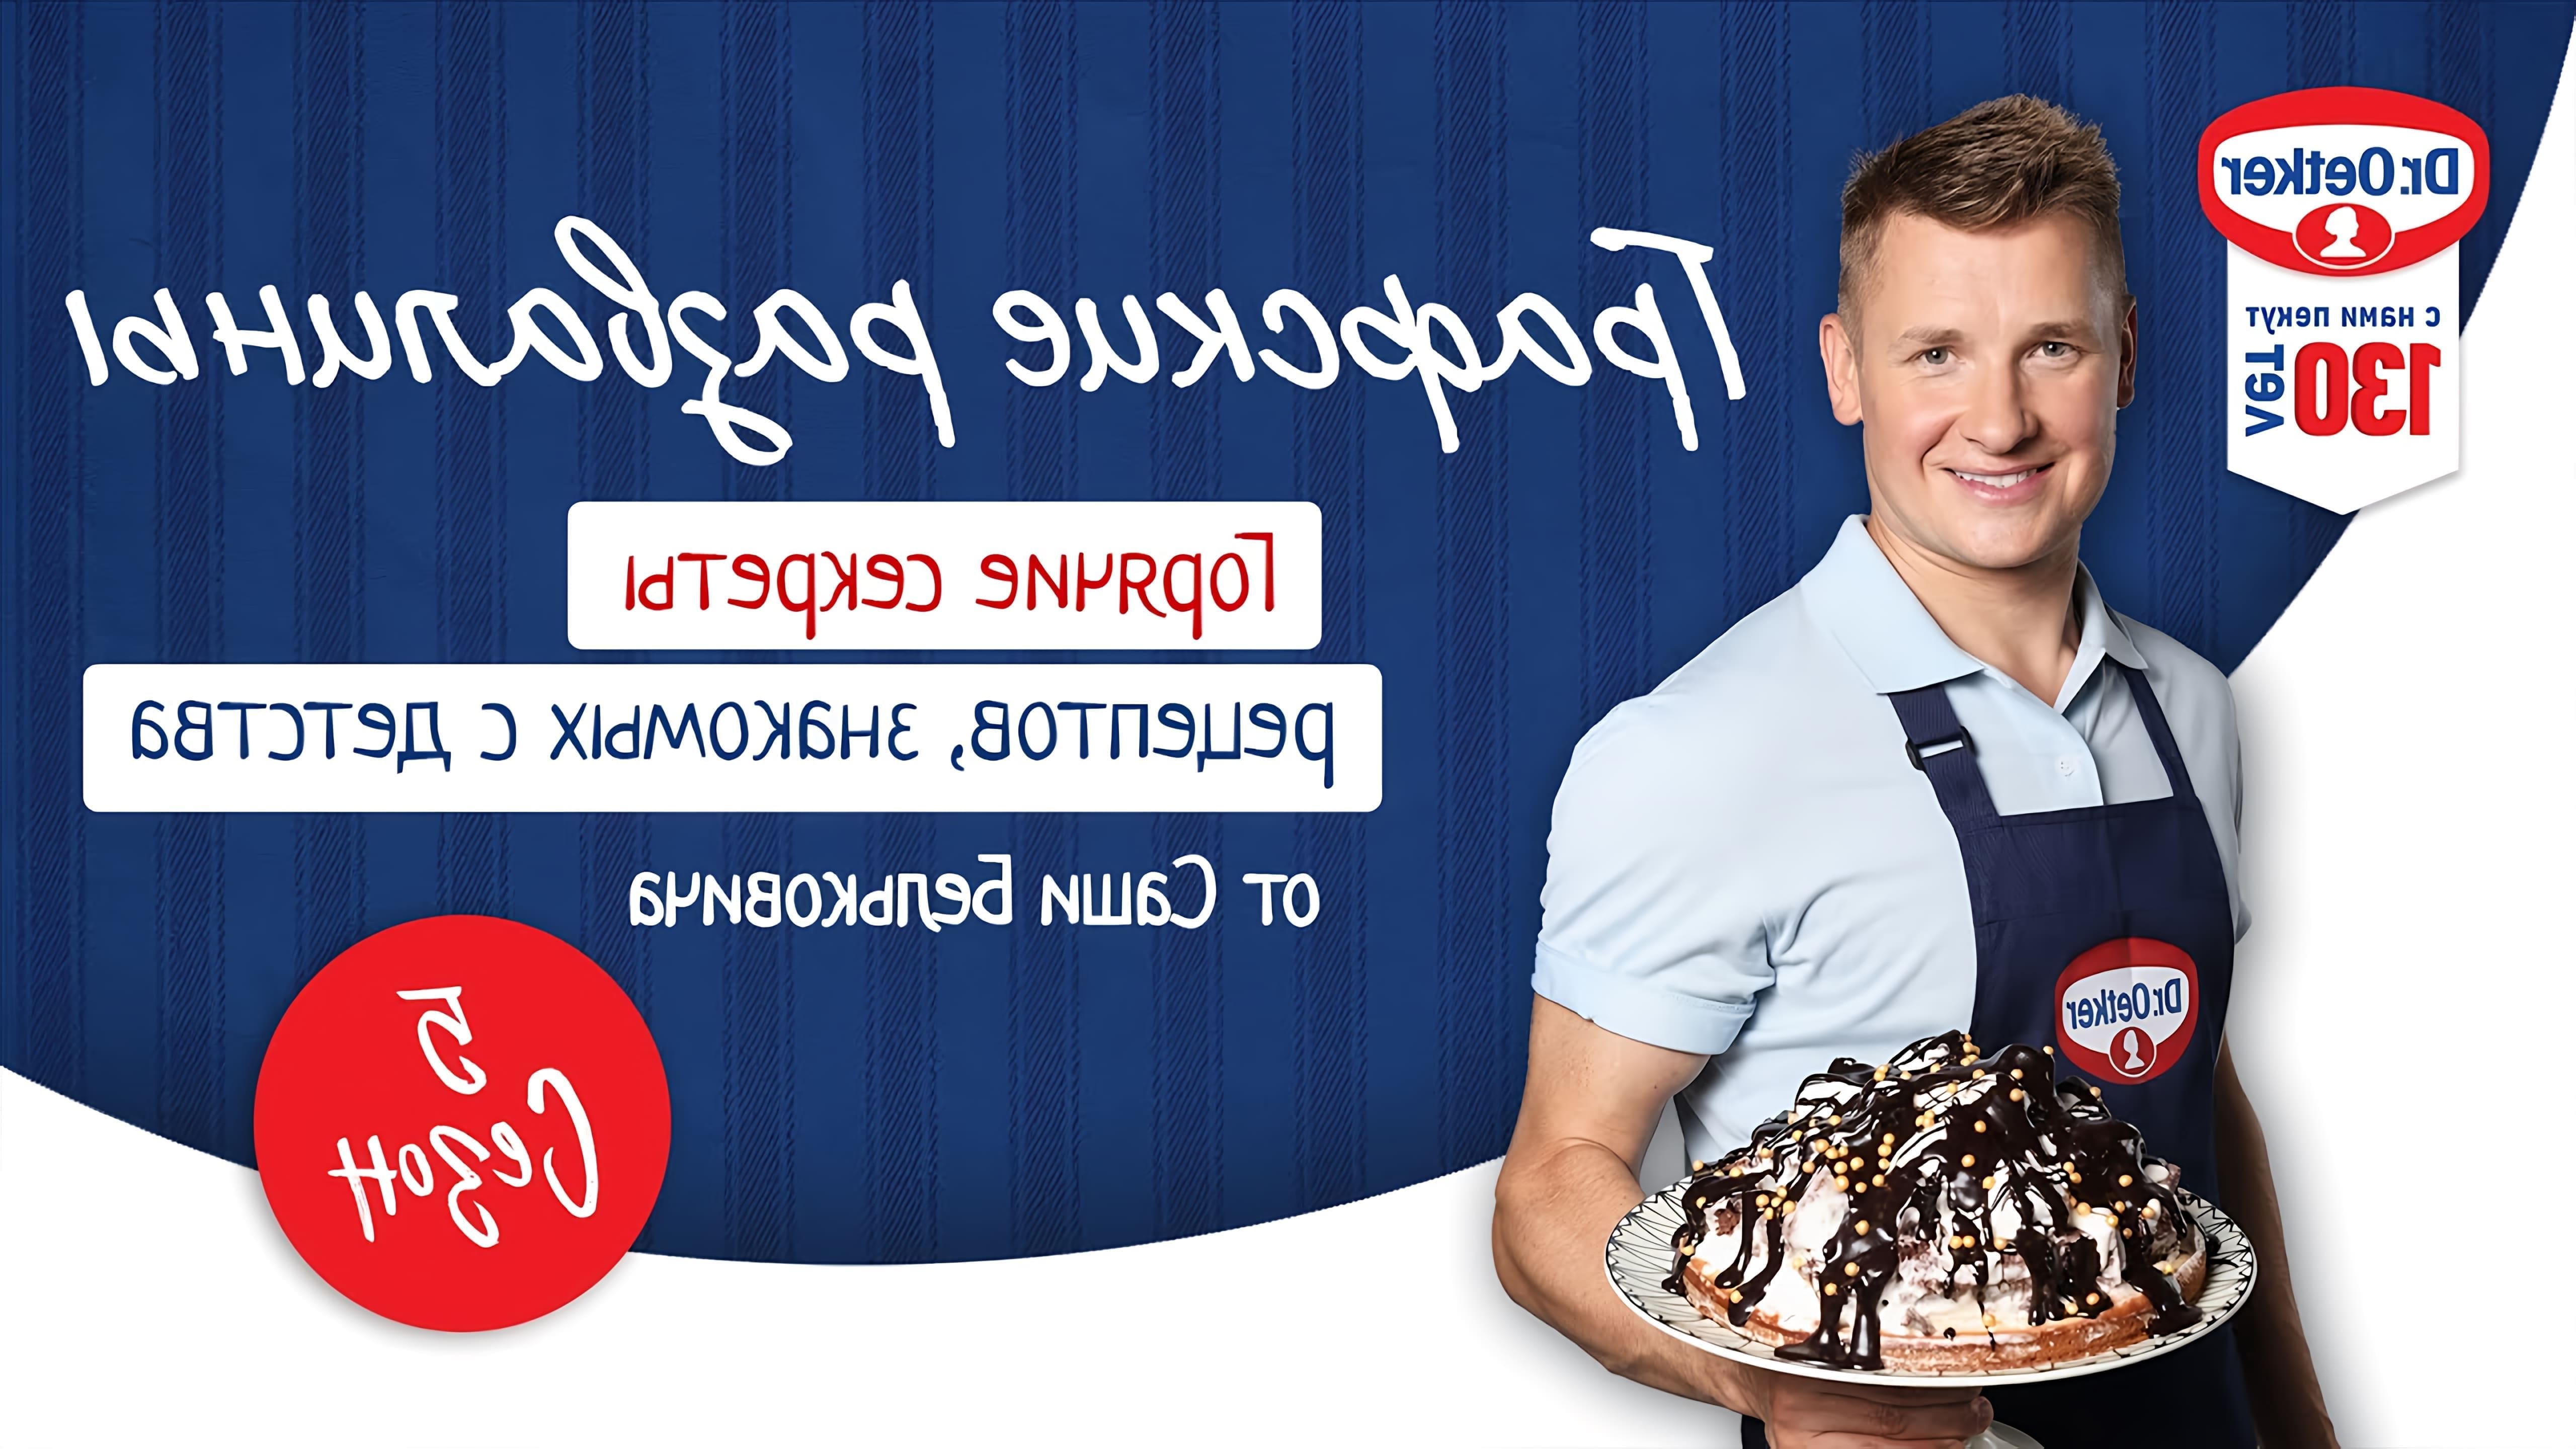 В этом видео Александр Белькович, известный шеф-повар и ведущий кулинарного шоу "Горячие секреты", делится рецептом торта "Графские развалины"